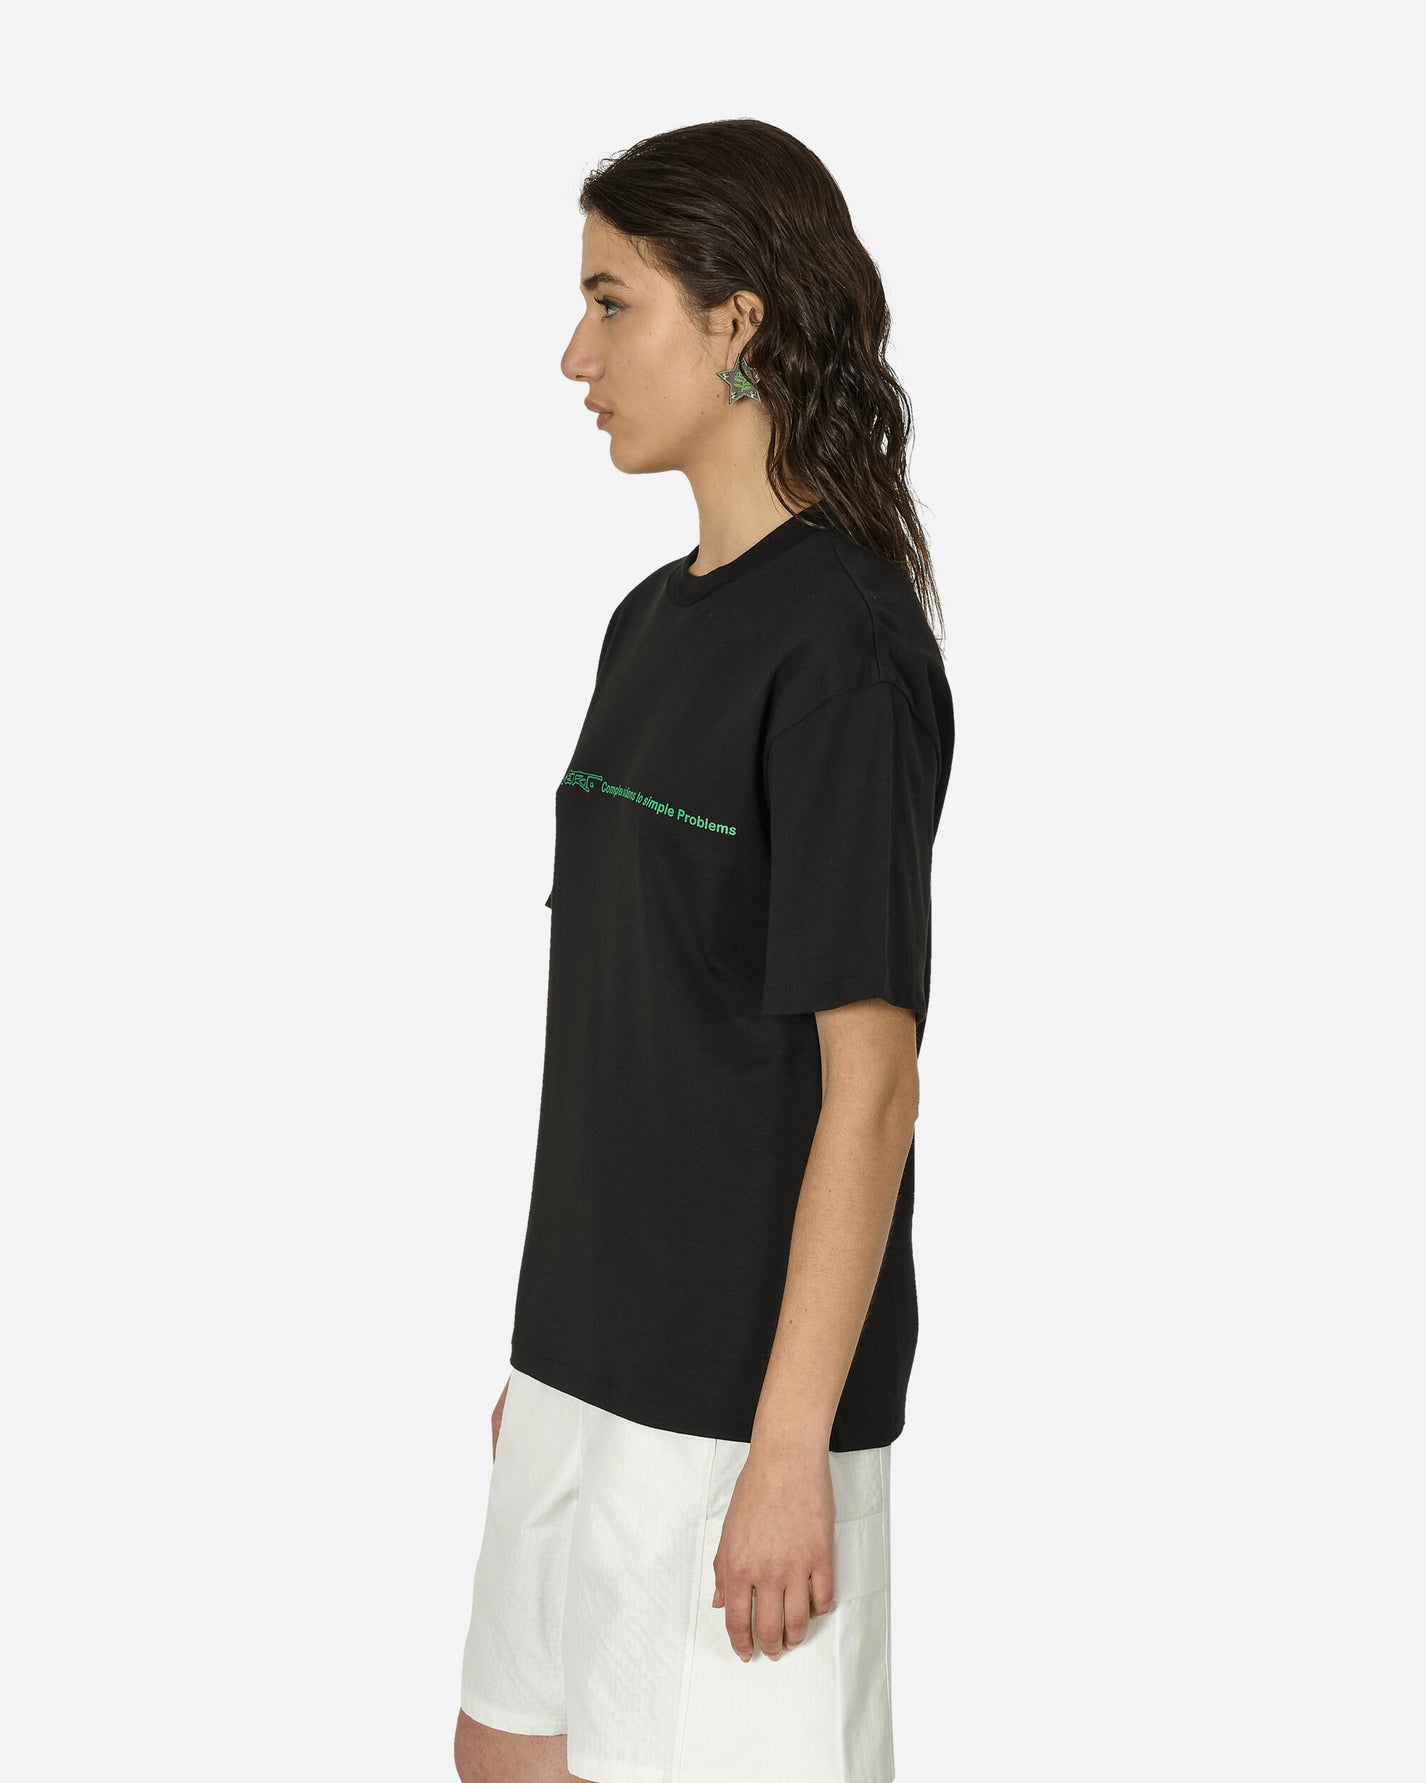 Rayon Vert Menhir T-Shirt Golgotha Black T-Shirts Shortsleeve RVS3-TS01 1